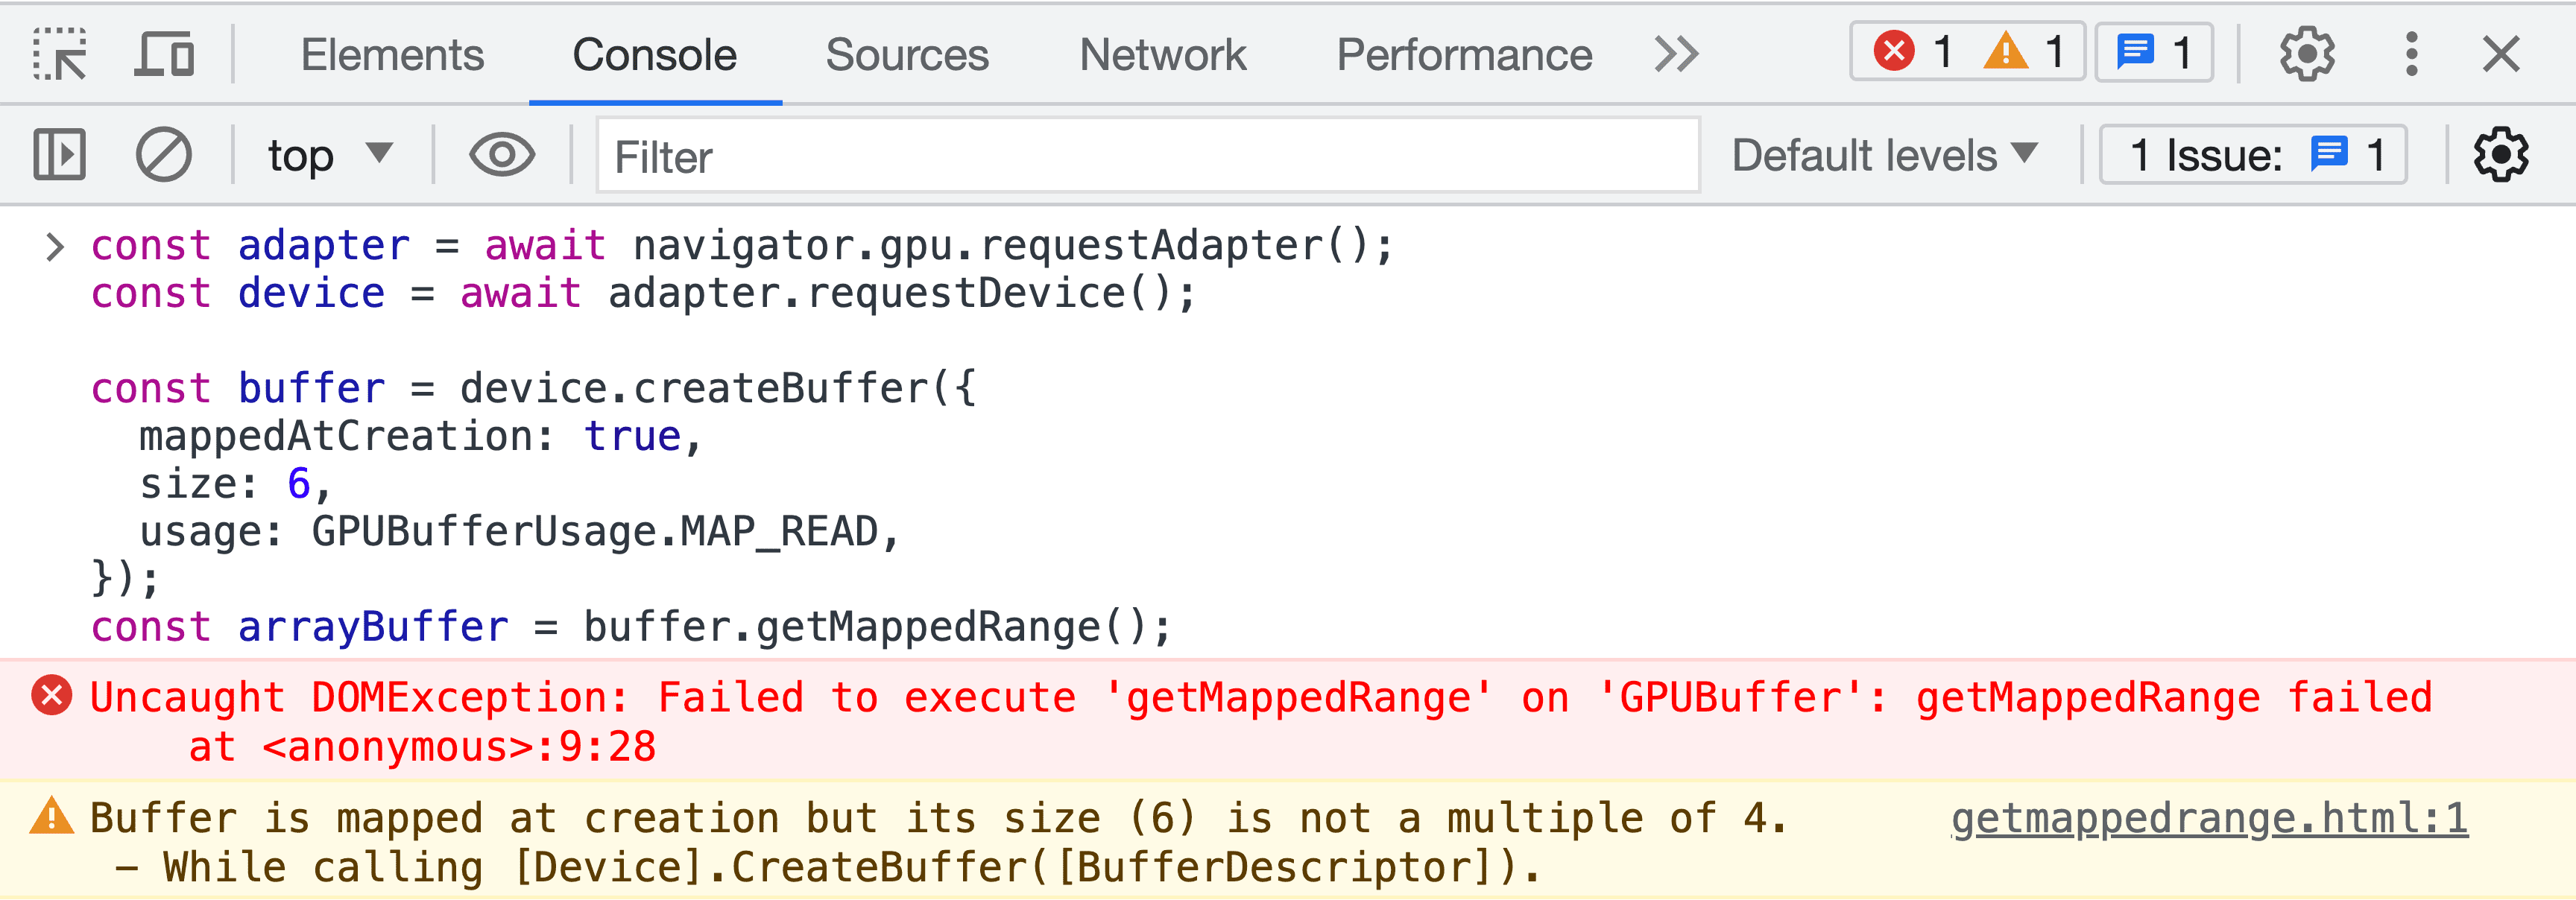 Captura de pantalla de la consola de JavaScript de Herramientas para desarrolladores con un mensaje de error de validación del búfer.